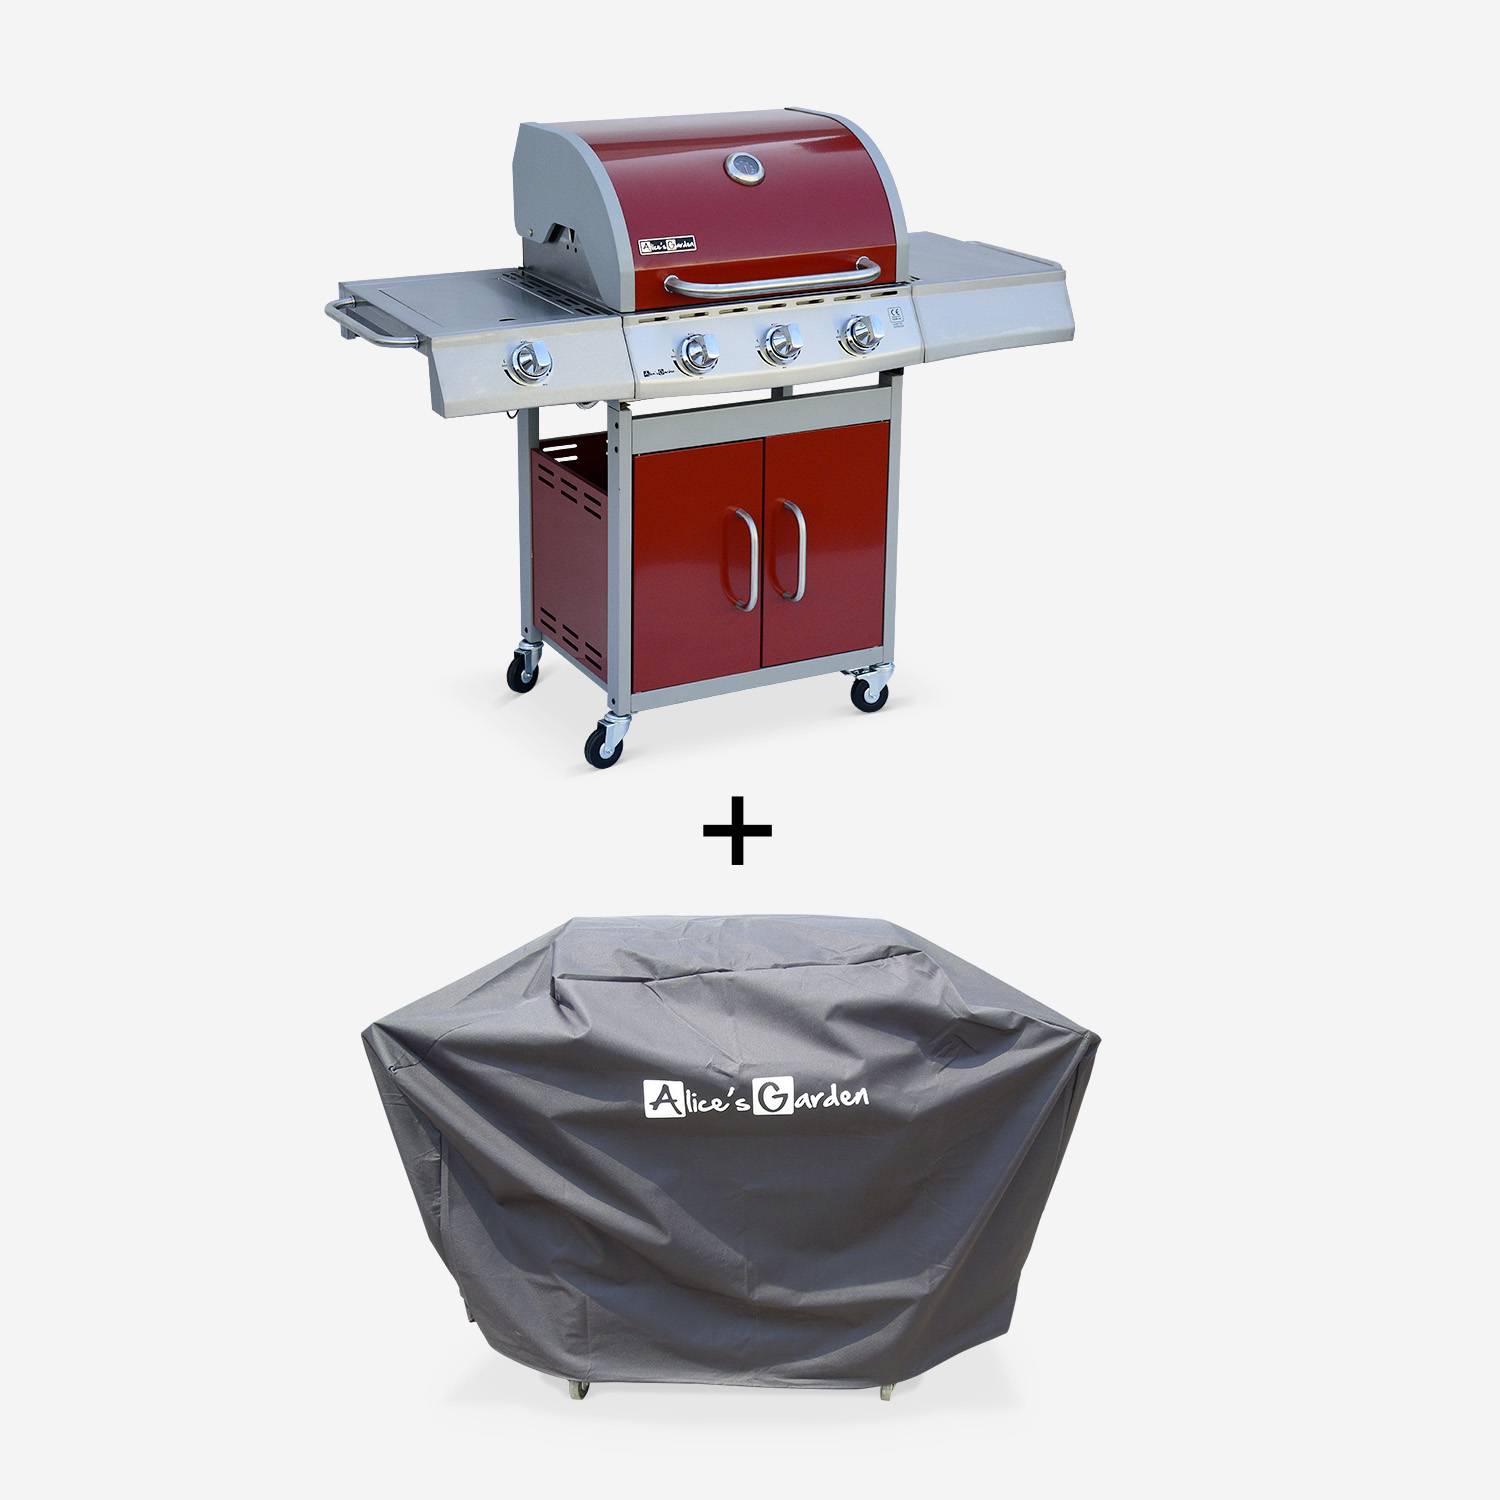 Barbecue gaz inox 14kW – Richelieu rouge – Barbecue 3 brûleurs + 1 feu latéral, côté grill et côté plancha, housse de protection incluse Photo3